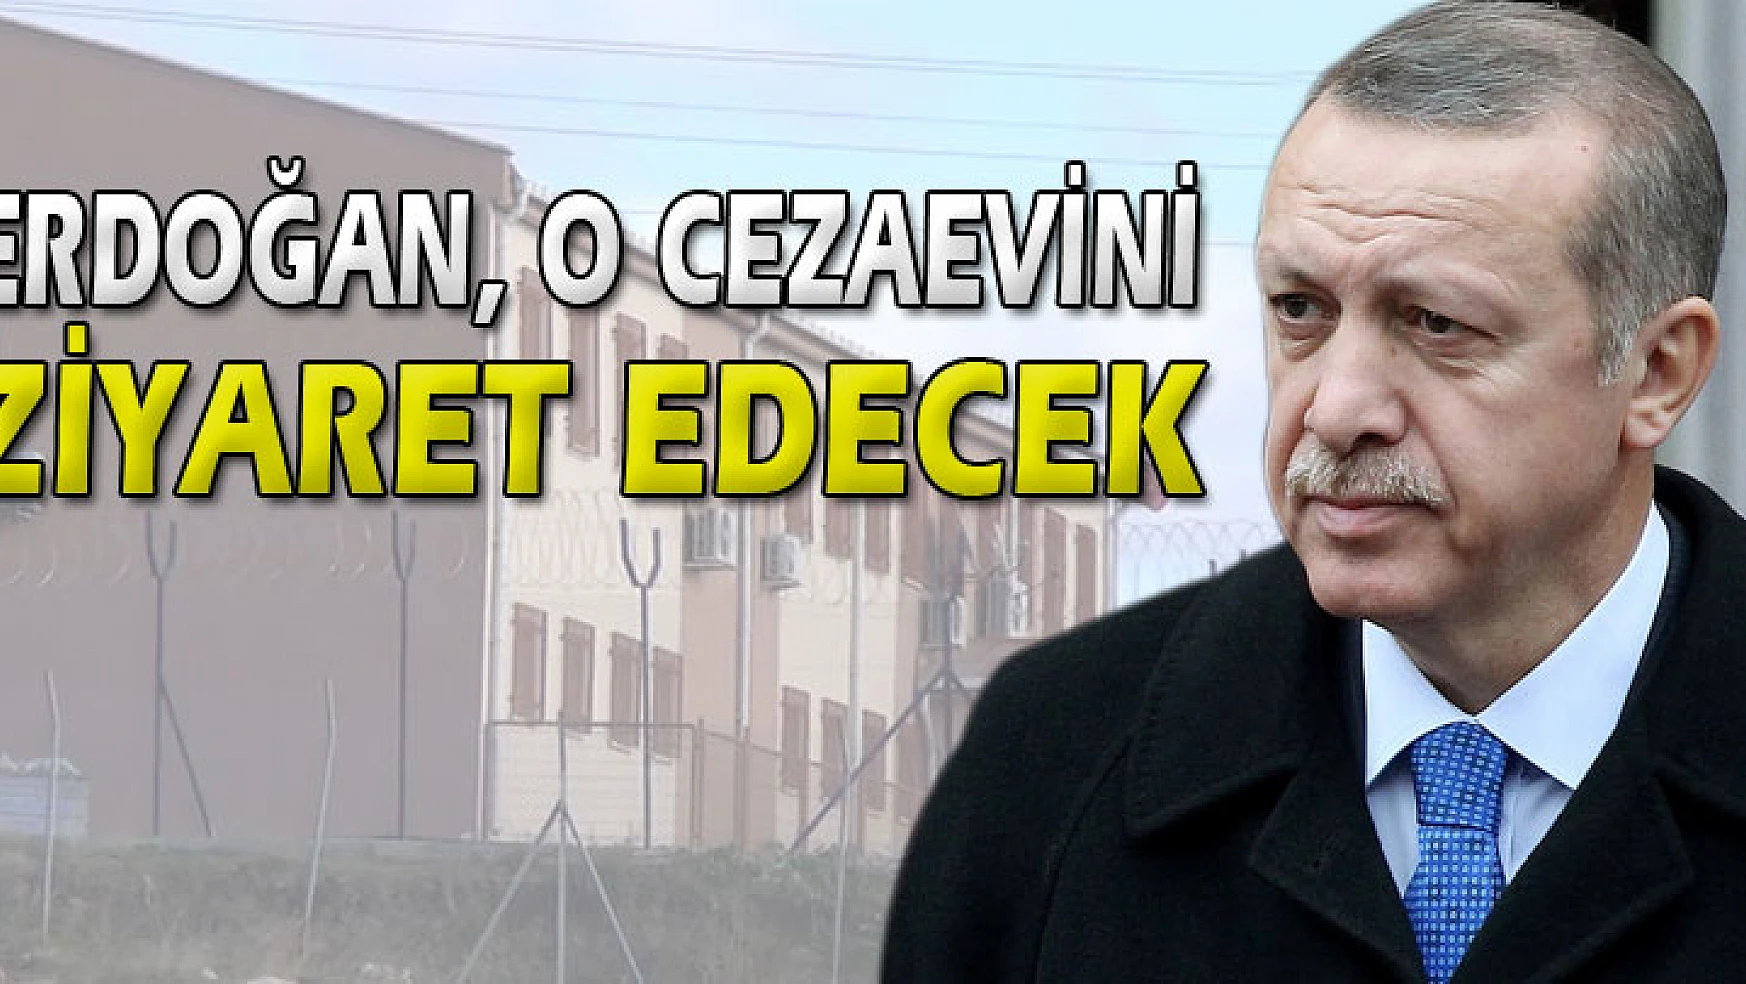 Başbakan Erdoğan, Pınarhisar Cezaevi'ni 14 yıl sonra ziyaret edecek